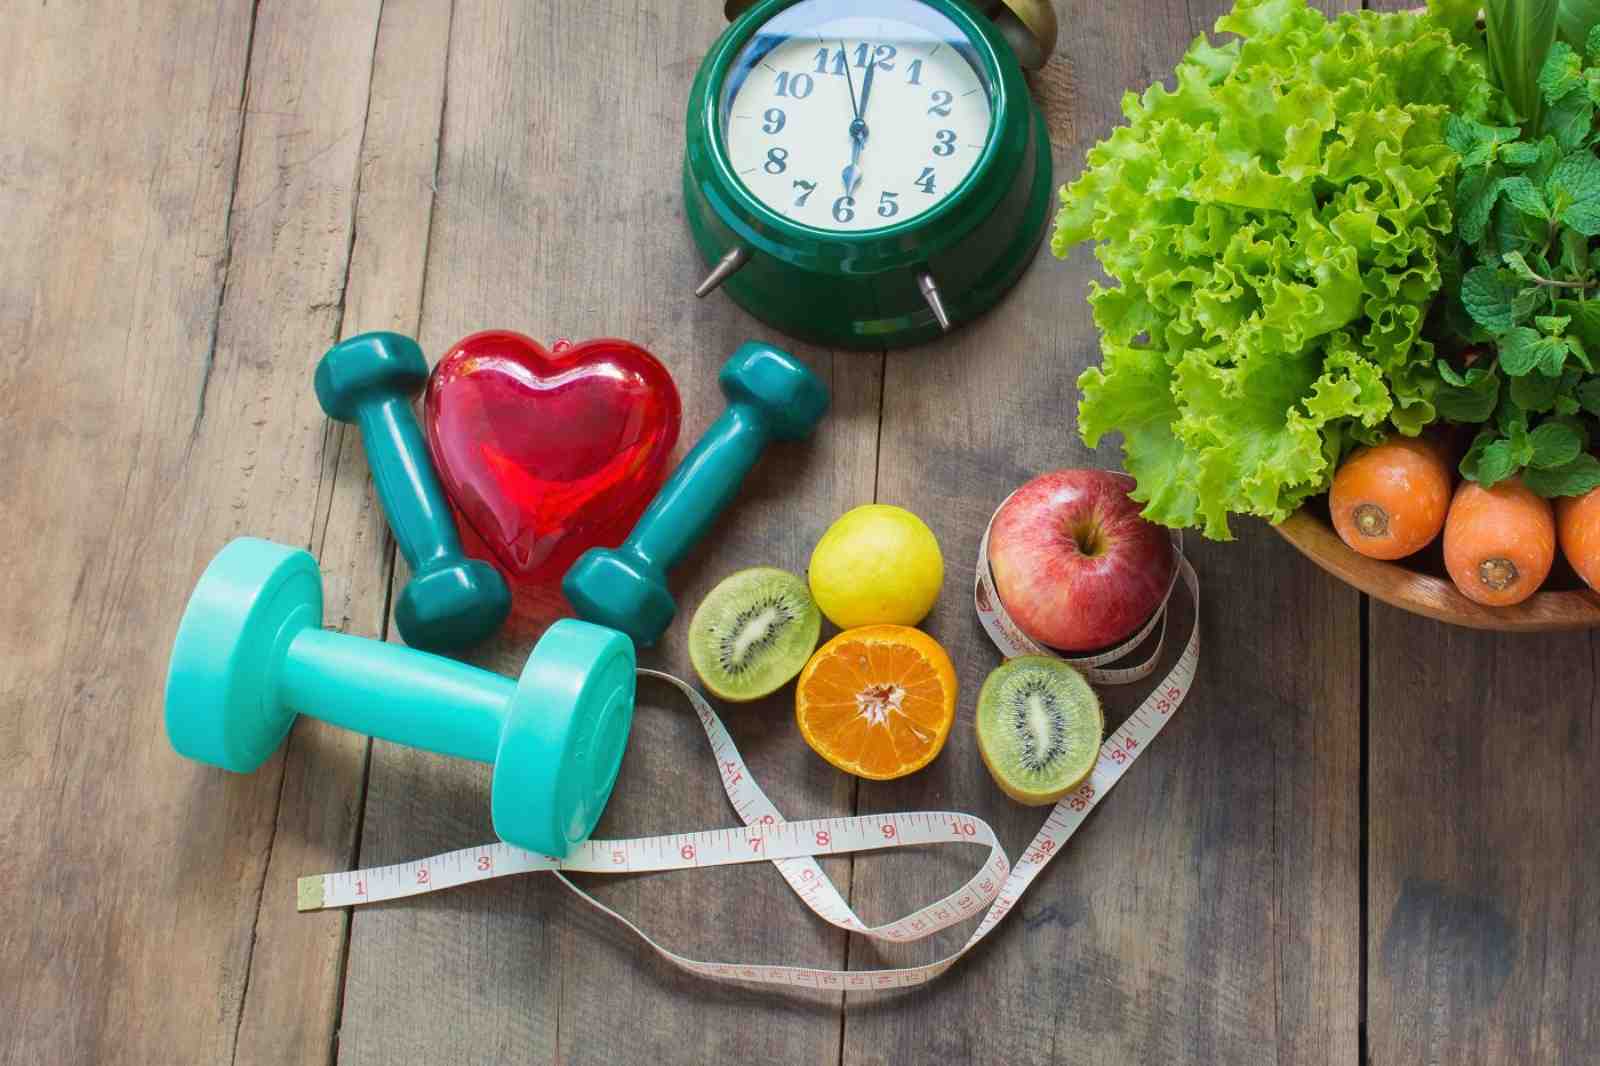 15 cách giảm cân sau Tết hiệu quả cho dáng gọn eo xinh